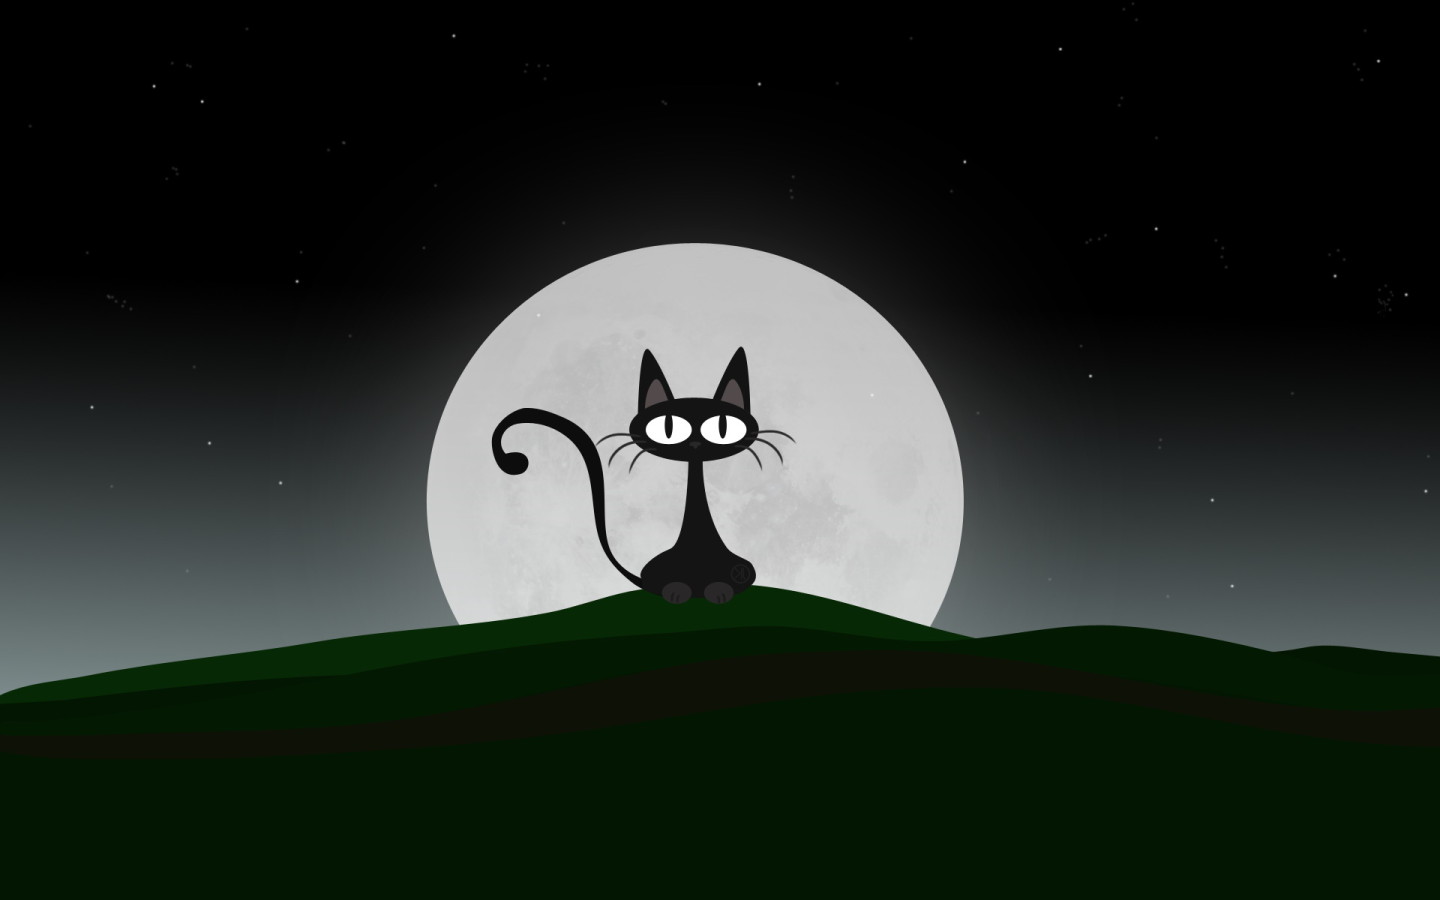 Night Cat